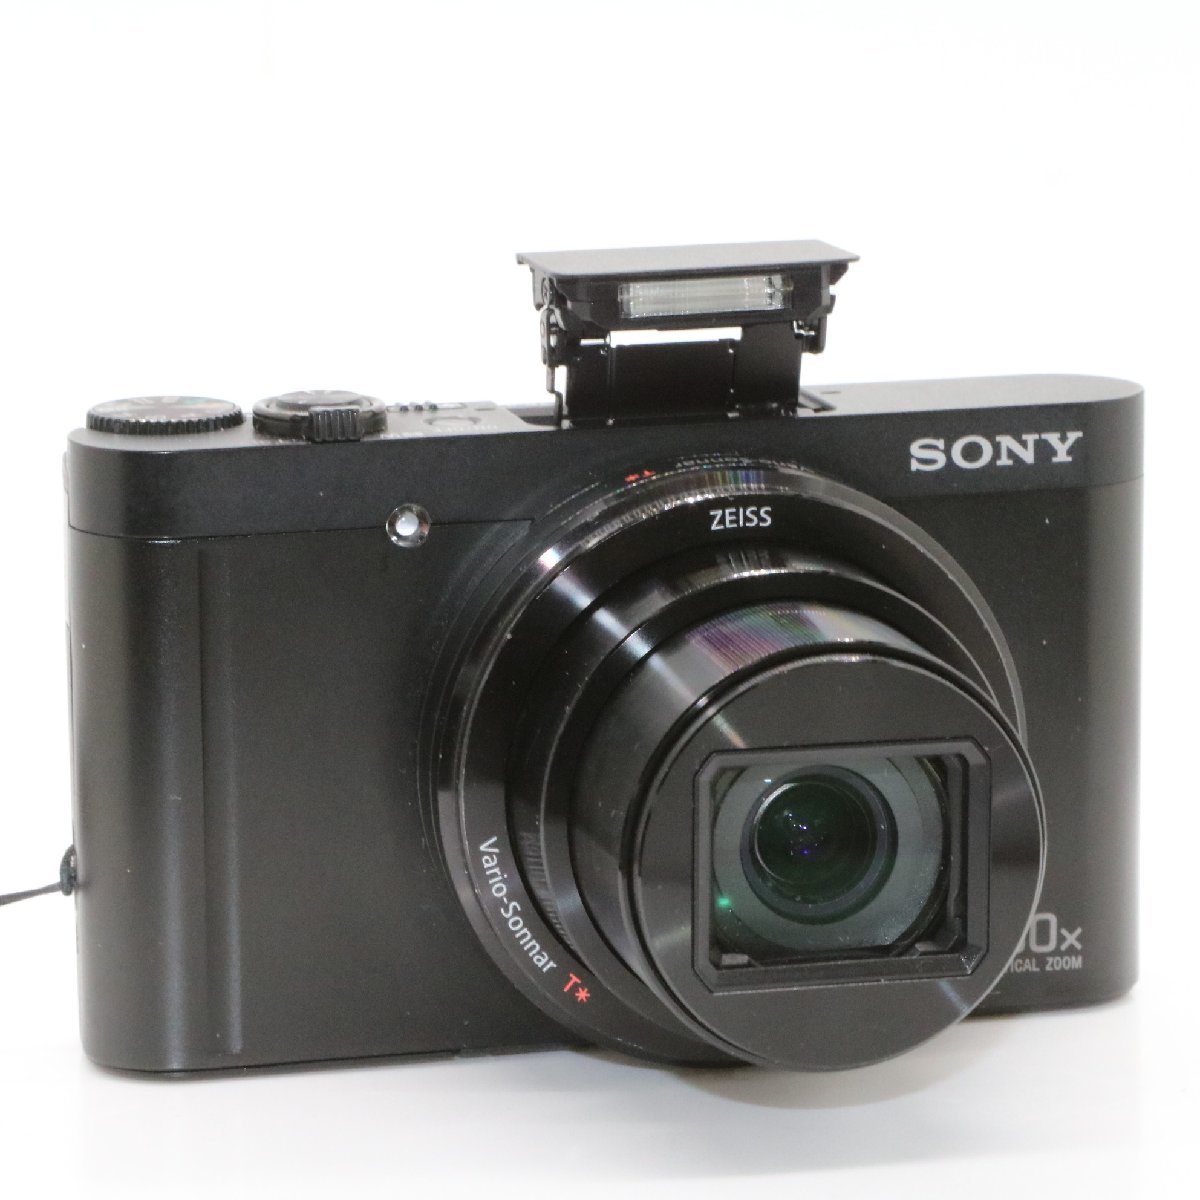 良品 ソニー コンパクトデジタルカメラ Cyber-shot DSC-WX500 ブラック 光学ズーム30倍(24-720mm) 180度可動式液晶モニター DSC-WX500 BC_画像2